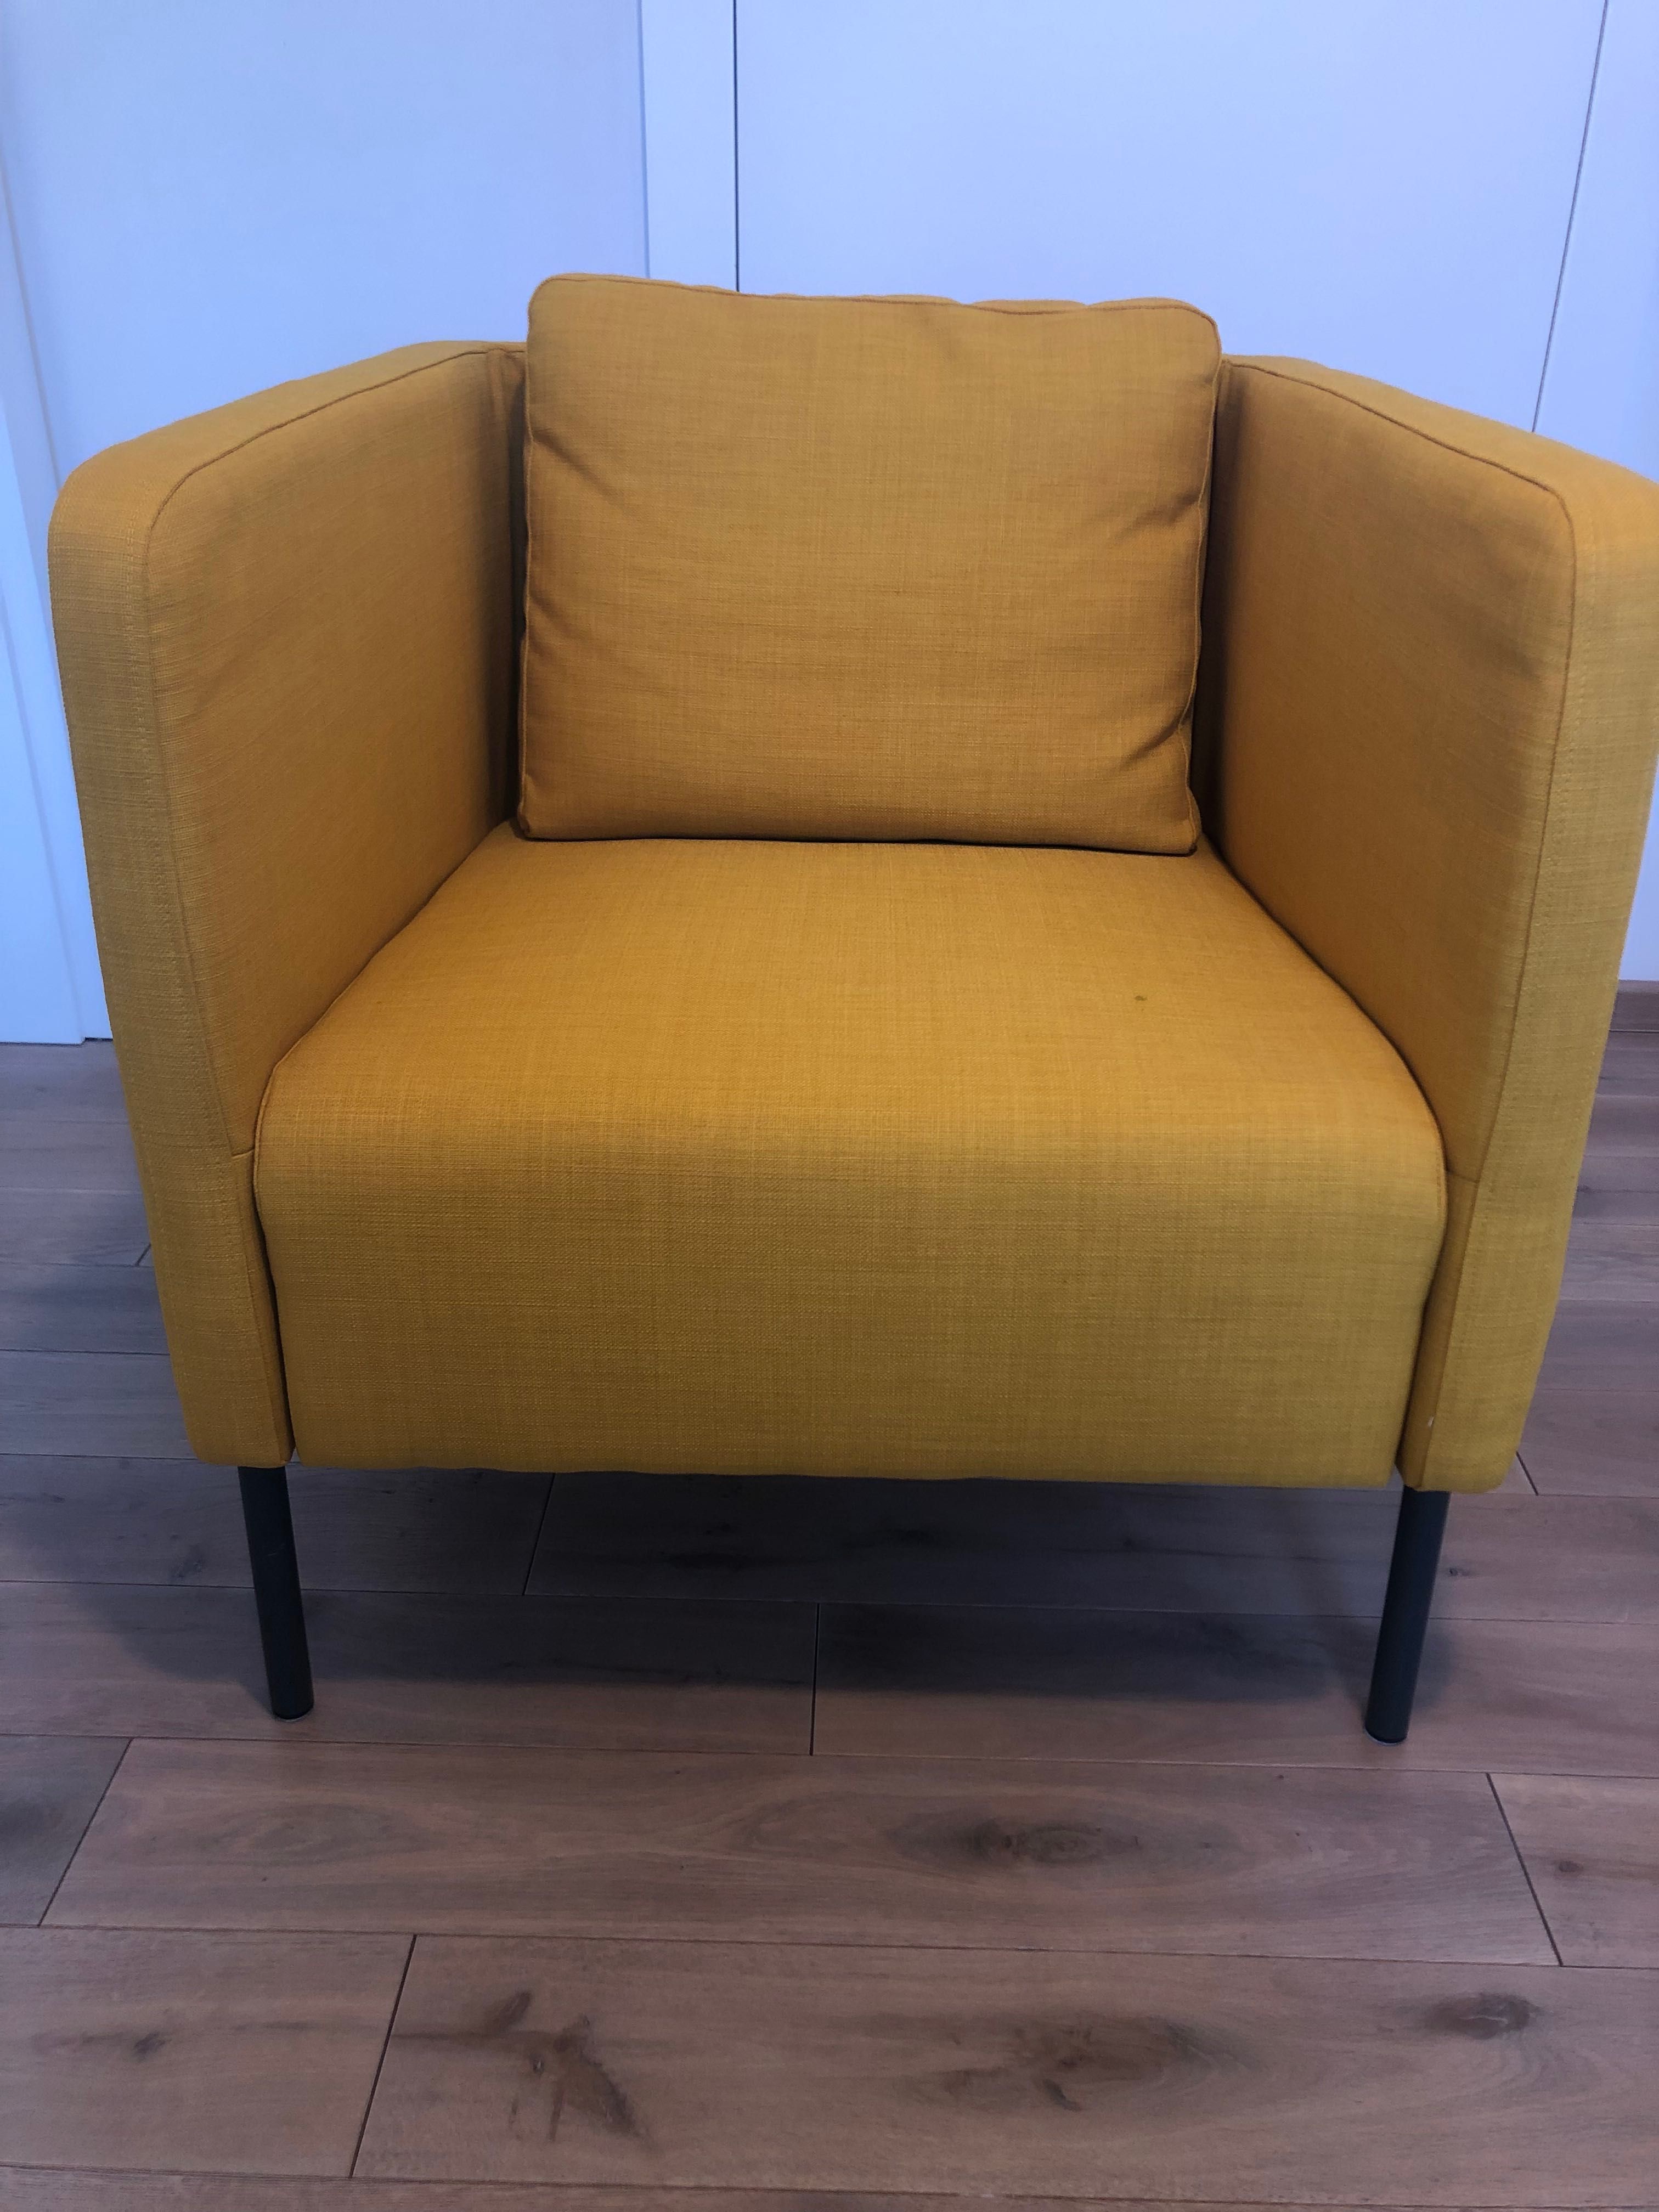 Ikea EKERÖ
Fotel, Skiftebo żółty